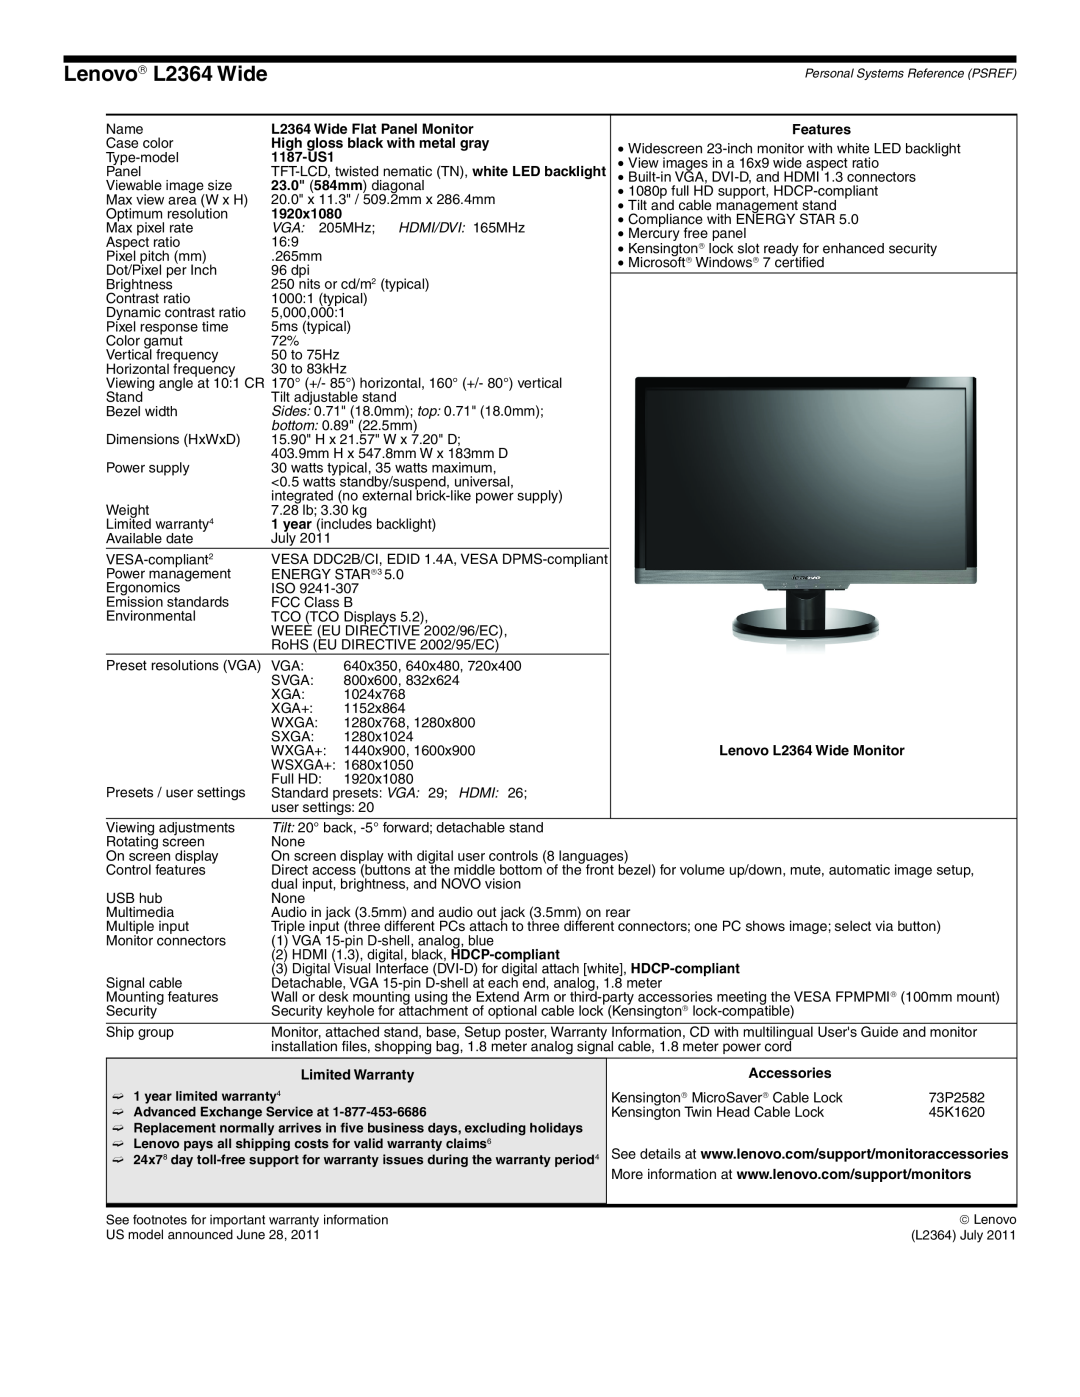 Lenovo L2363D manual Lenovo→ L2364 Wide, VGA 205MHz HDMI/DVI 165MHz 